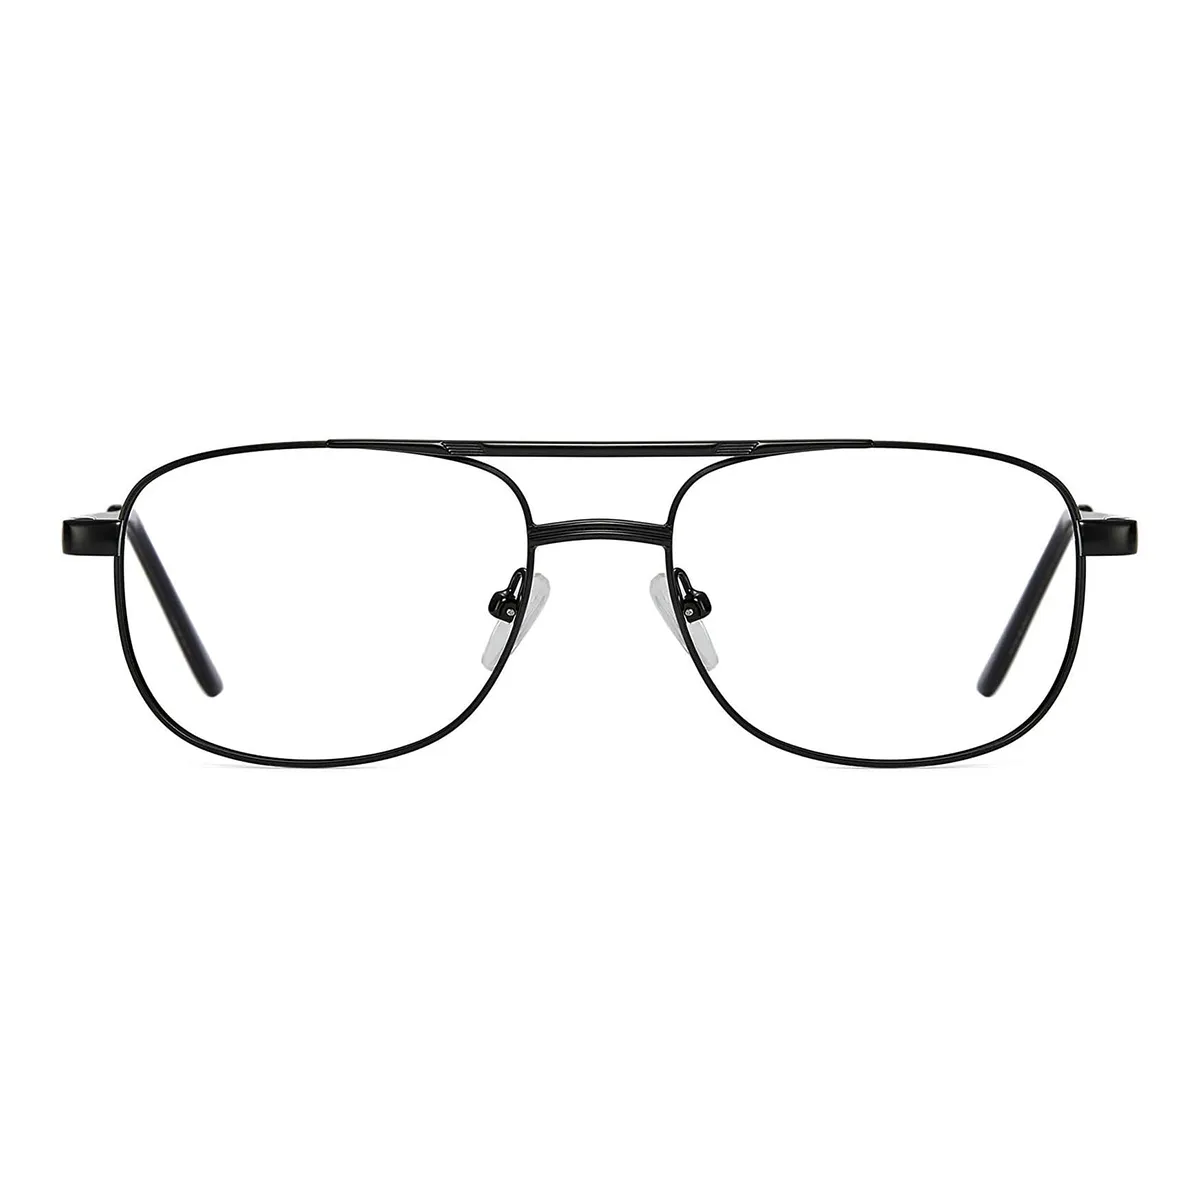 Business Aviator Black  Reading Glasses for Men